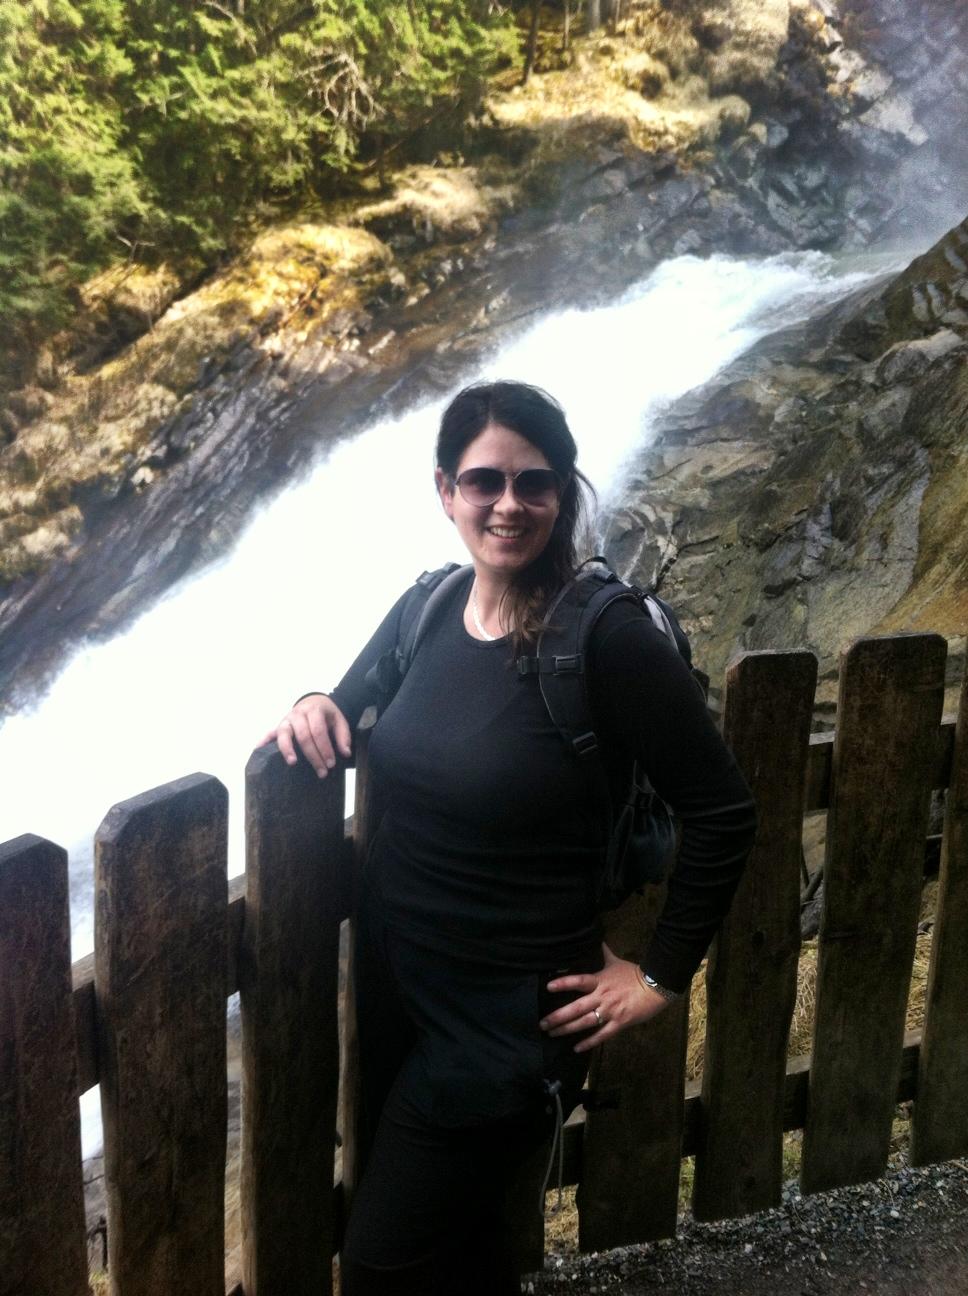 Me enjoying Krimml Waterfall at one of several viewing platforms.